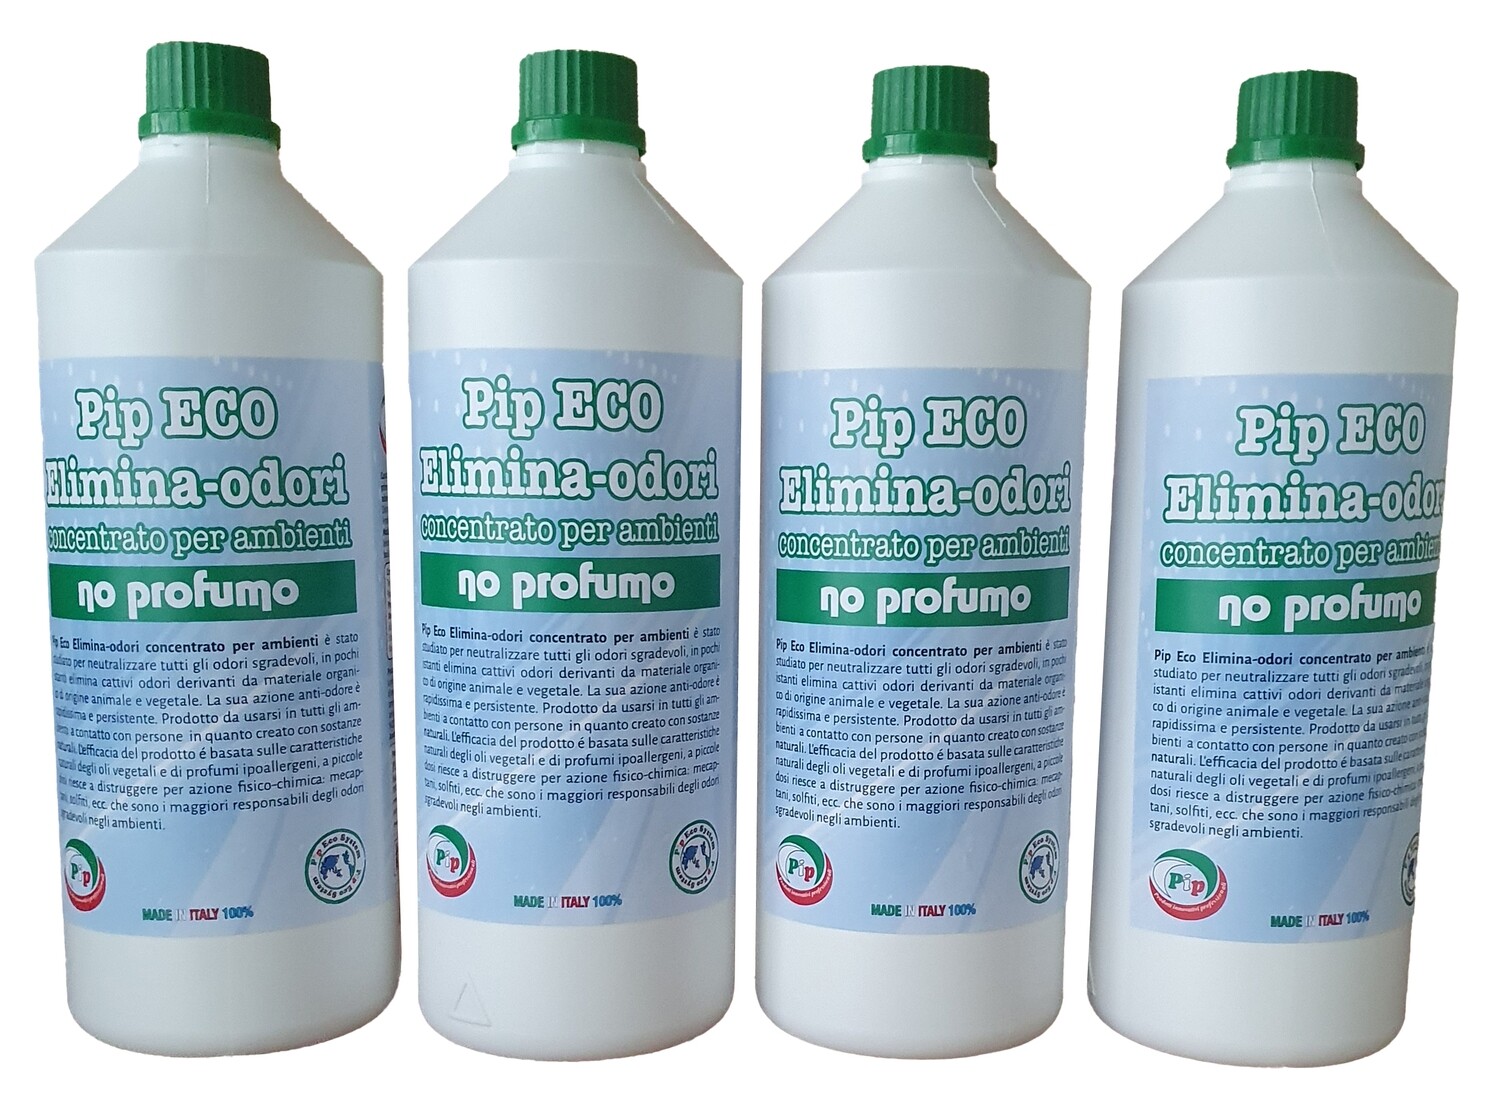 Elimina-odori Disabituante concentrato No-Profumo Pip conf. 4 FL. LT.1, Pari a 10 Litri di prodotto pronto all'uso + Vapo